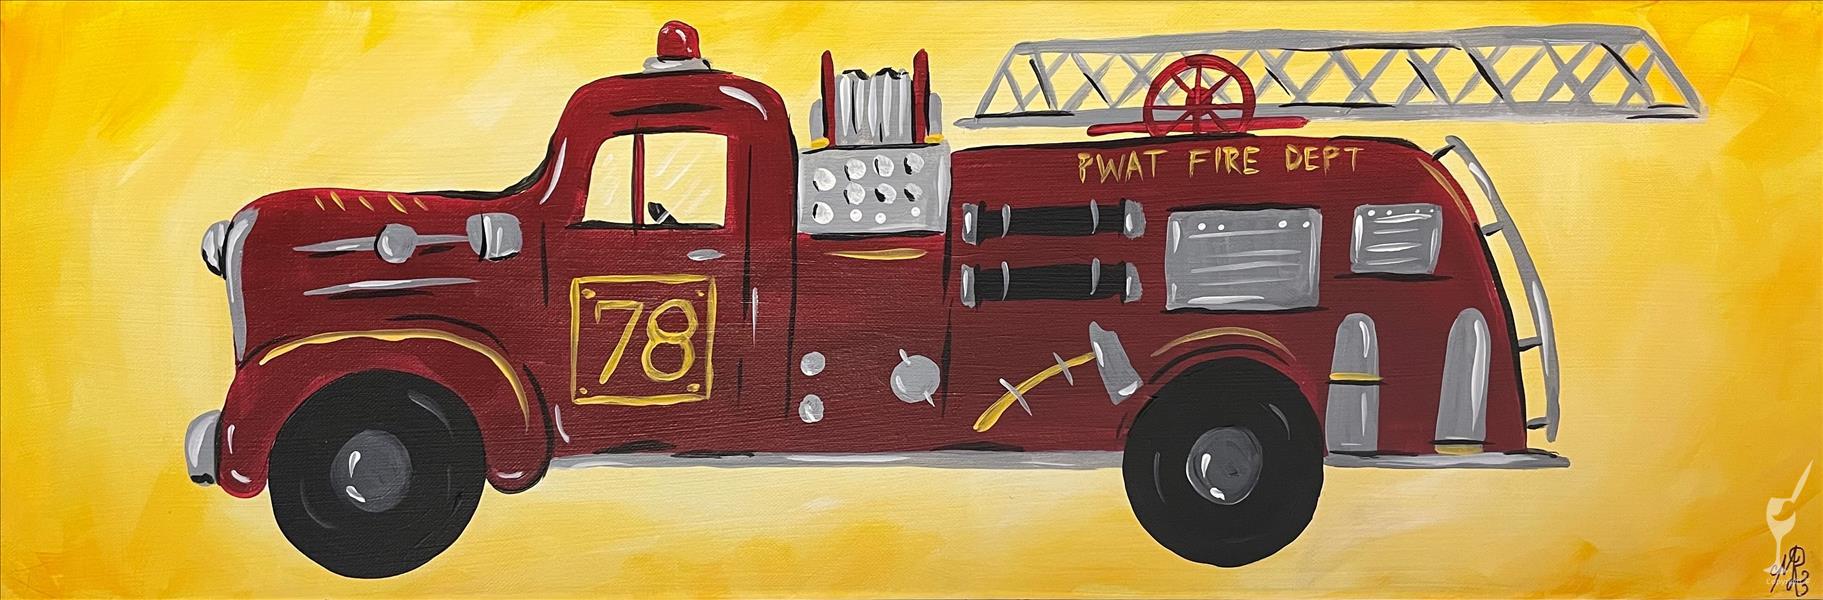 A Fire Truck